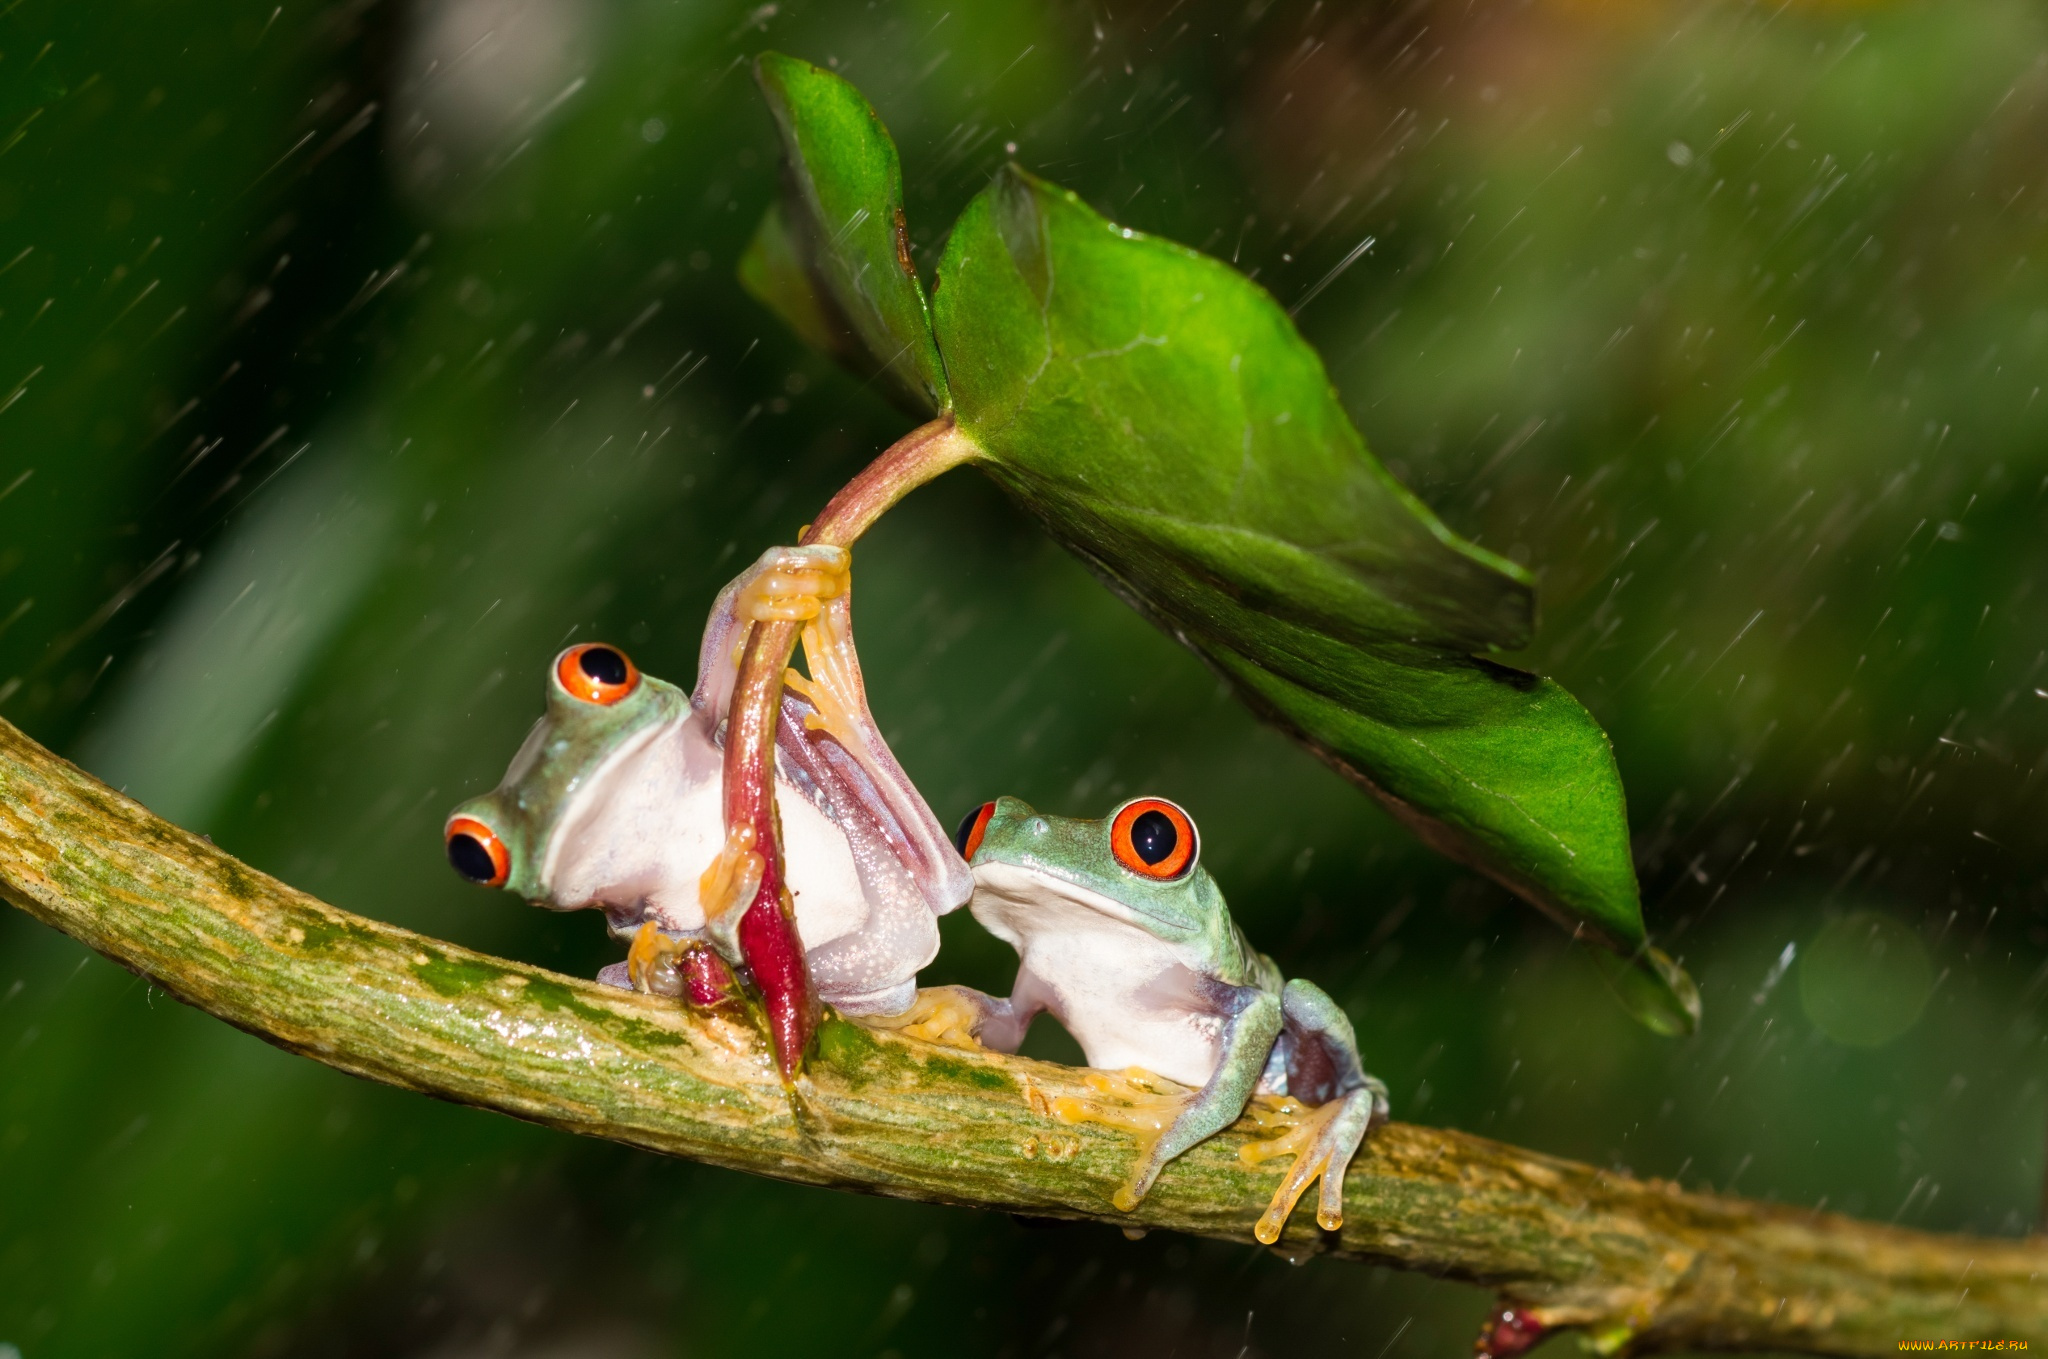 животные, лягушки, colourfull, umbrella, frog, разноцветные, зеленые, лист, дождь, orange, red, eyes, leave, под, зонтом, beauty, rain, зонт, дружба, friendsheep, лапки, оранжевые, глаза, hd, держаться, древесные